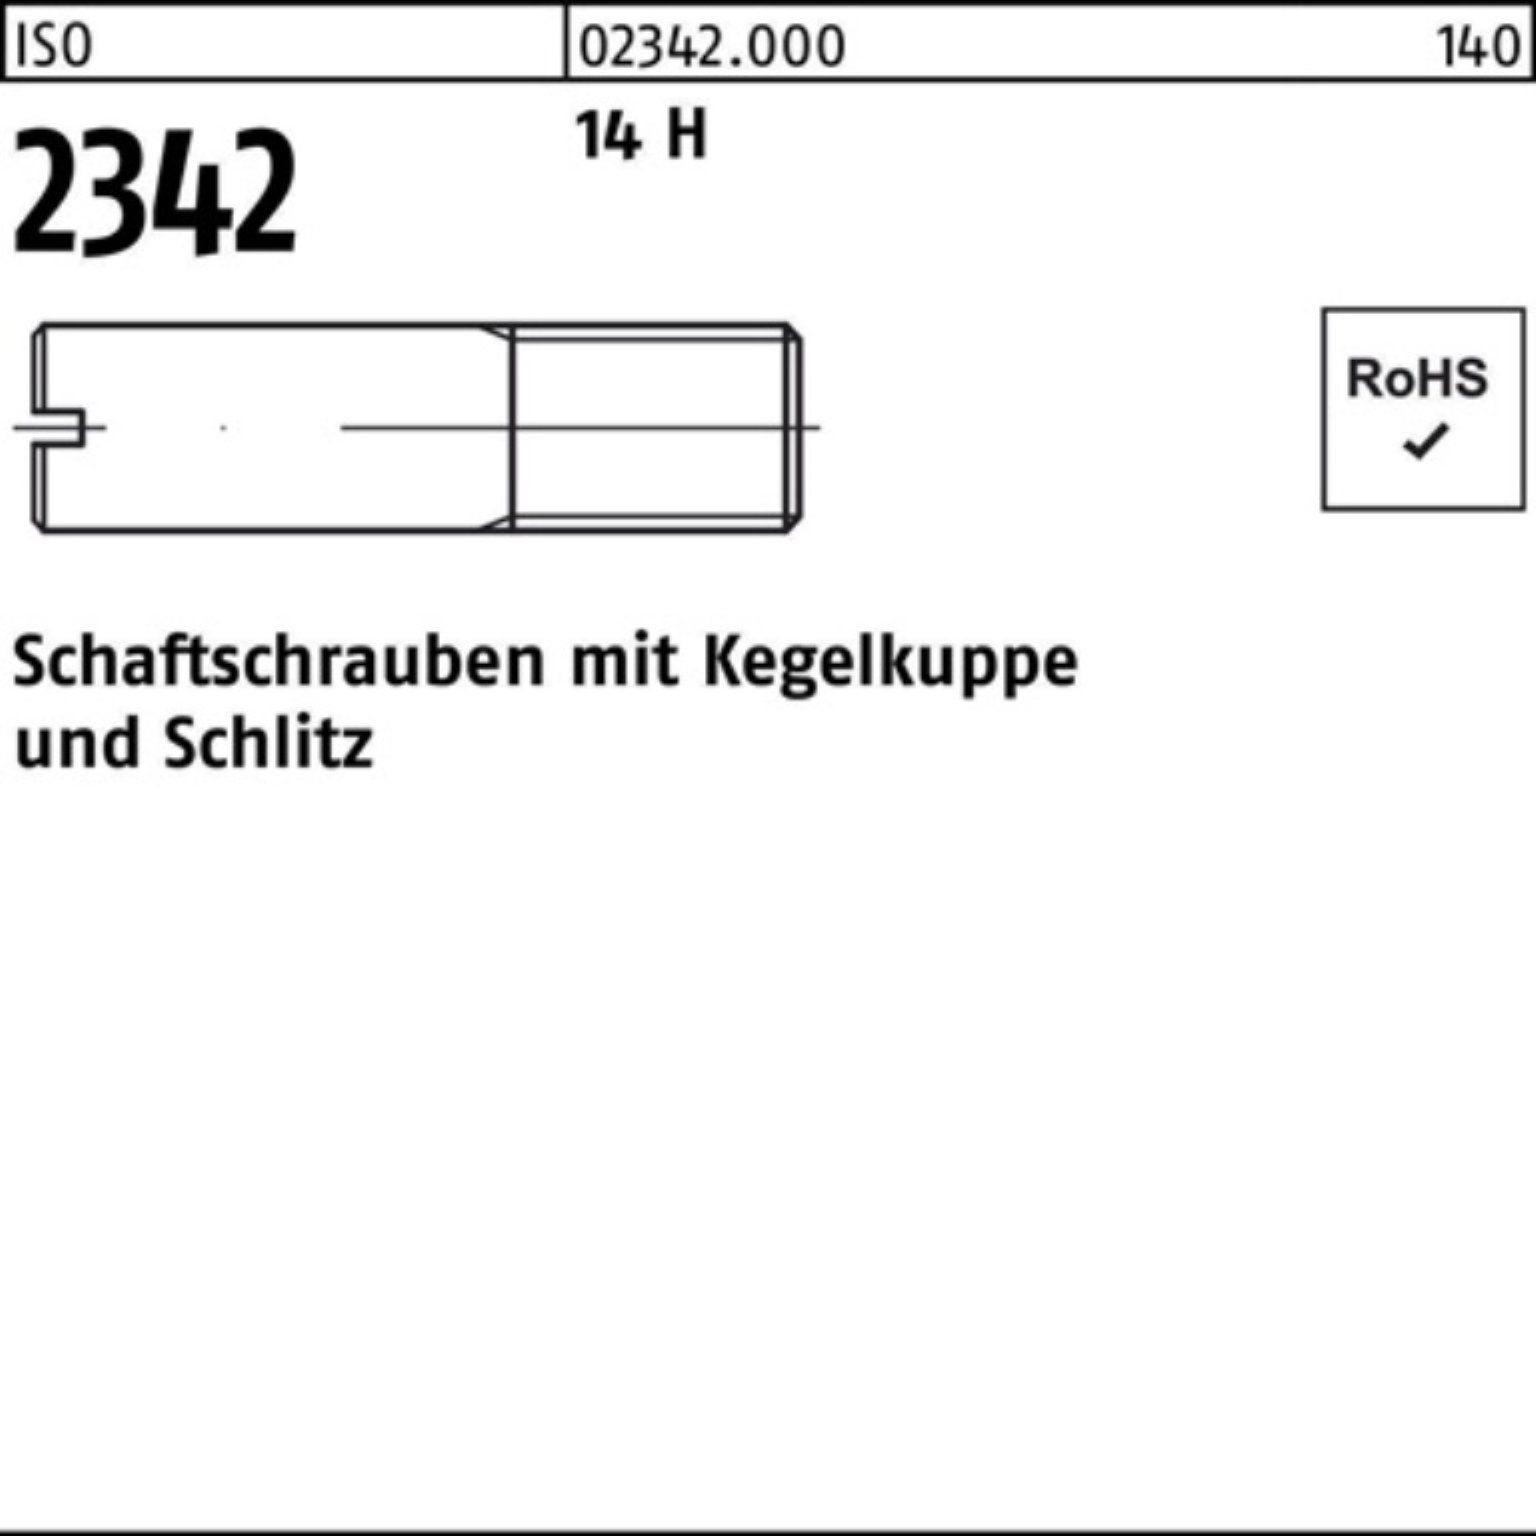 Reyher Schraube 100er Pack Schaftschraube ISO 2342 Kegelkuppe/Schlitz M5x 10 14 H 100